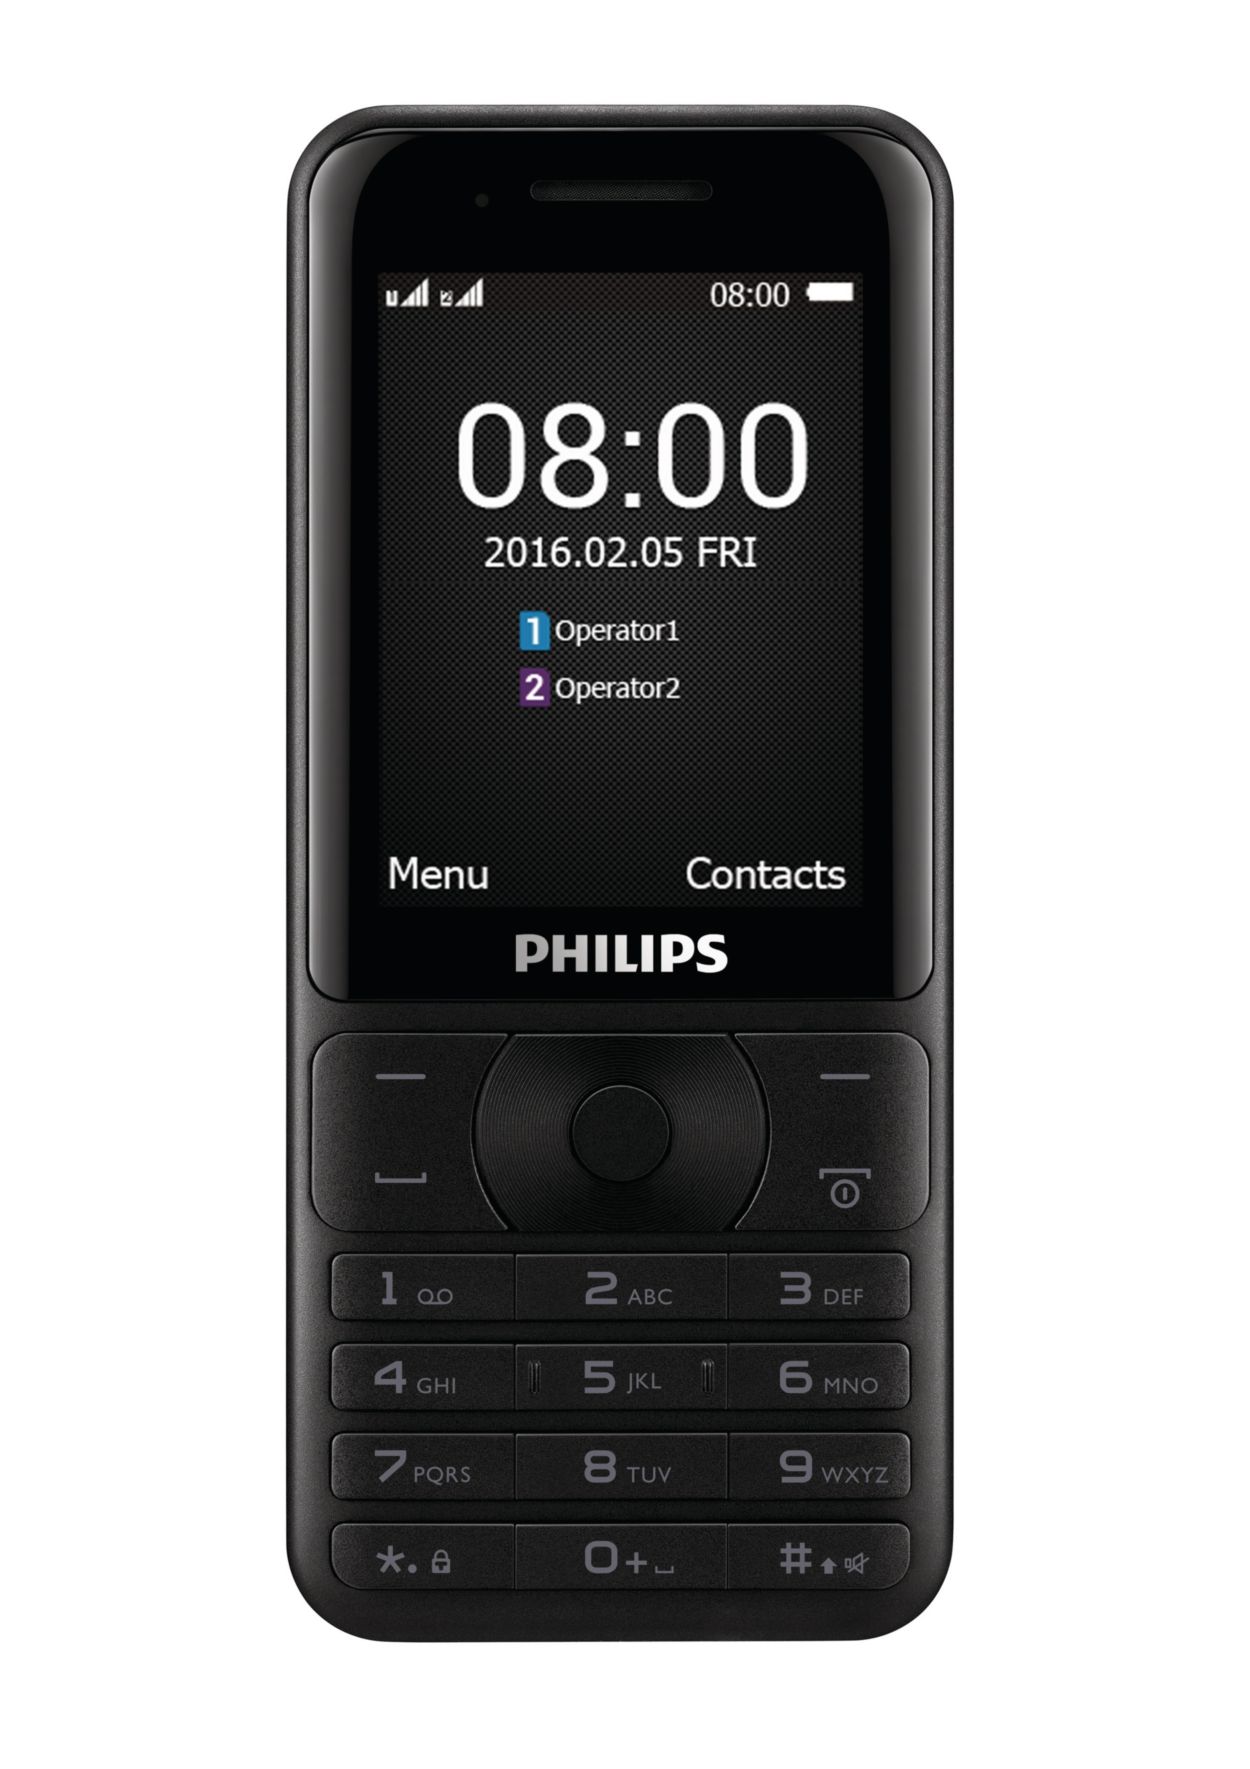 Мобильные телефоны в туле. Philips Xenium e181. Philips Xenium e570 Dual SIM Black. Филипс ксениум e181. Philips Xenium e570.